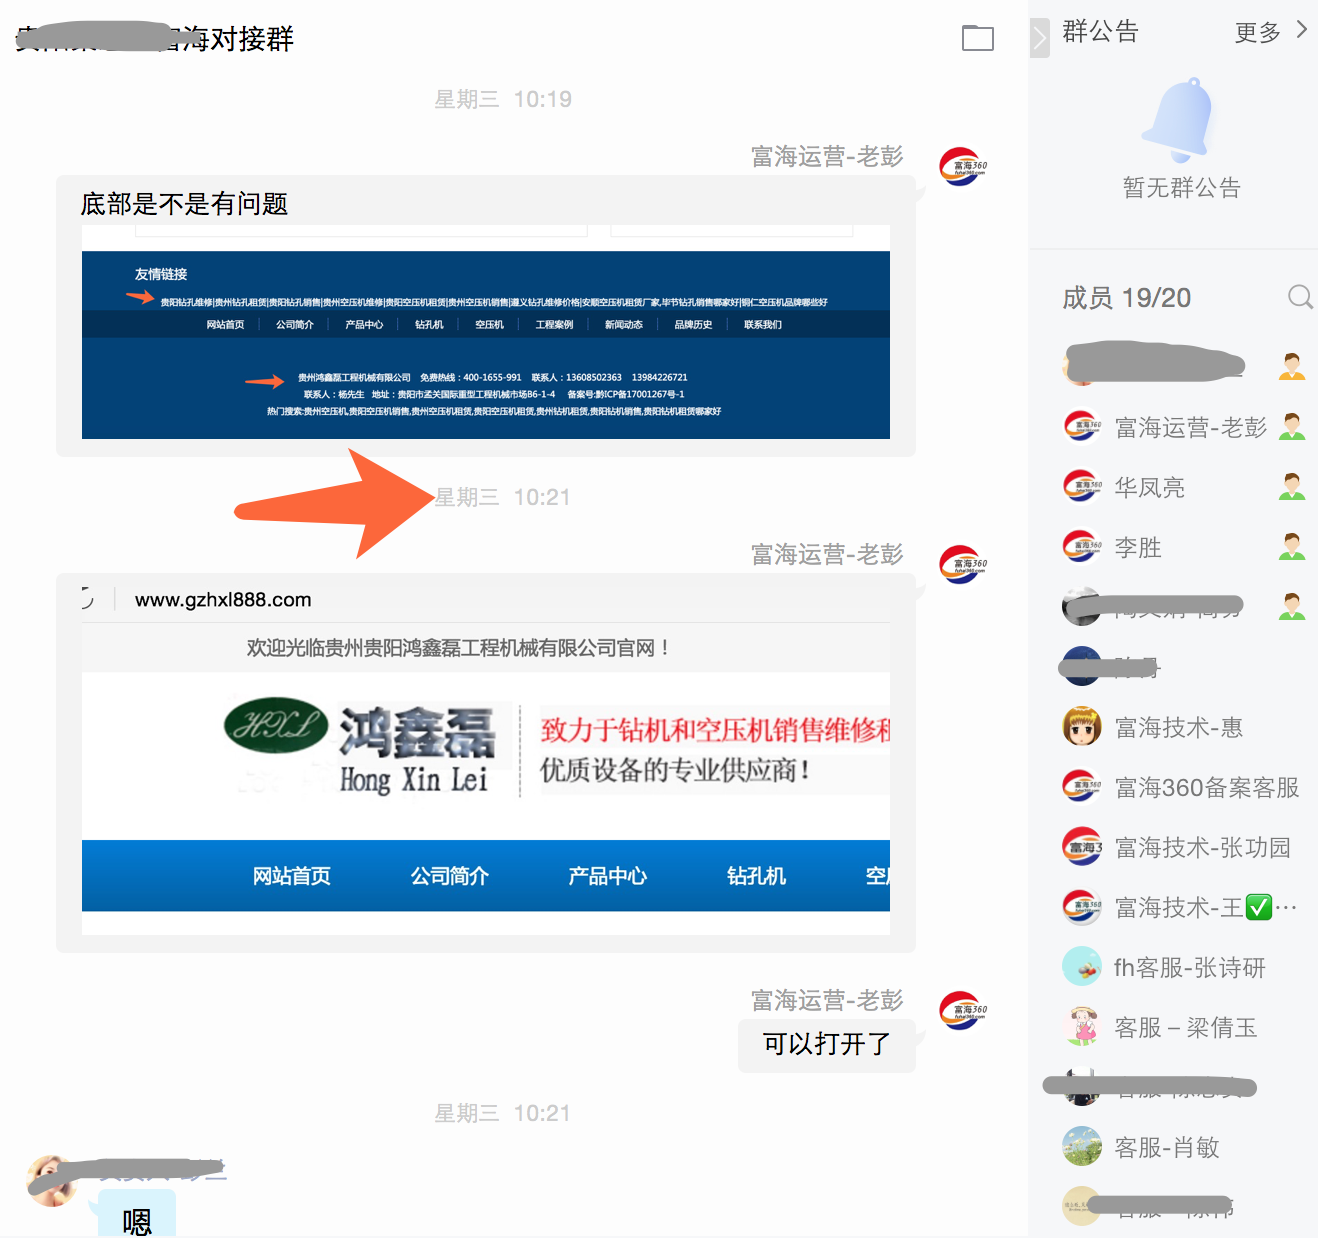 新网站案例贵阳钻机租赁上线不到6个小时全部排名